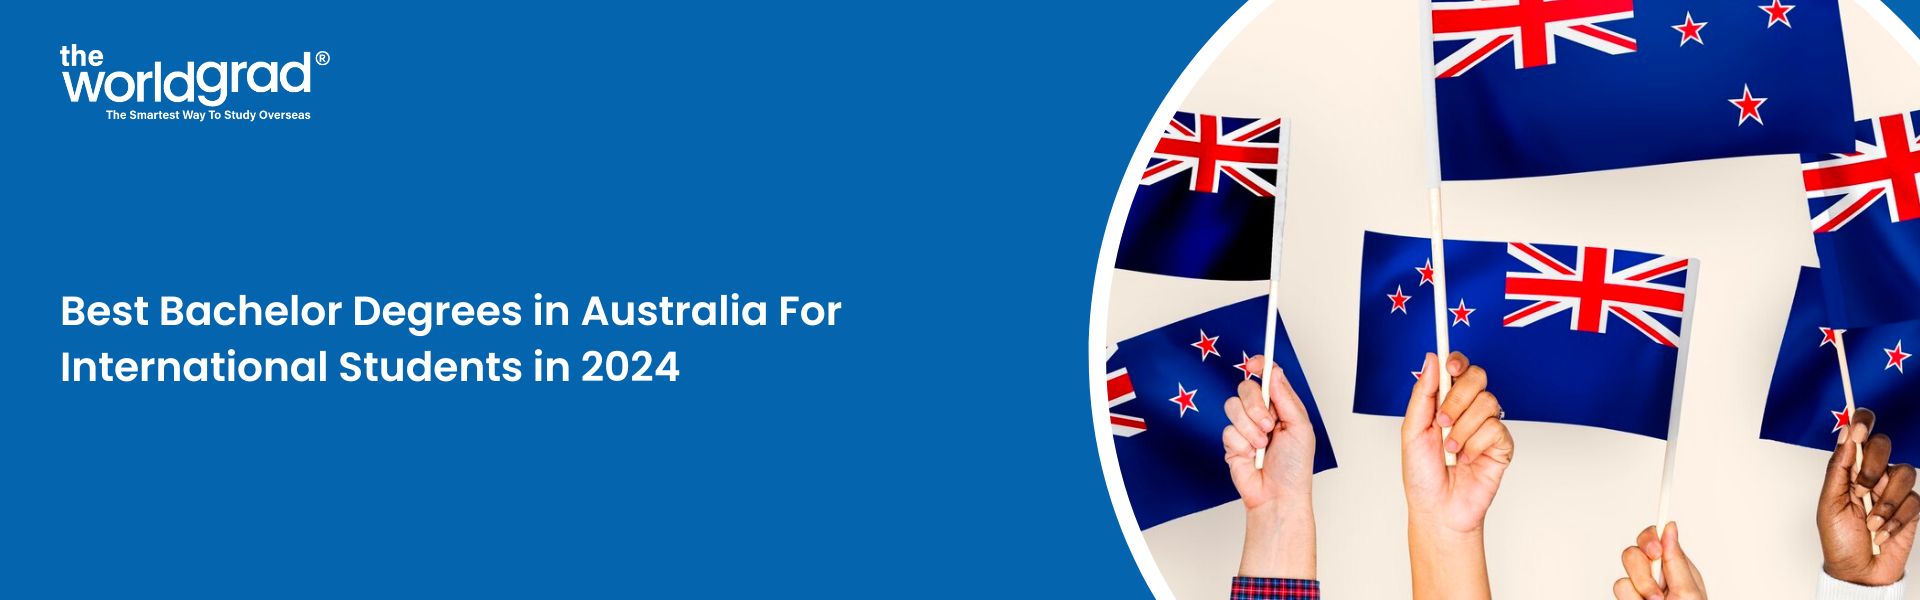 Best Bachelor Degrees in Australia For International Students in 2024